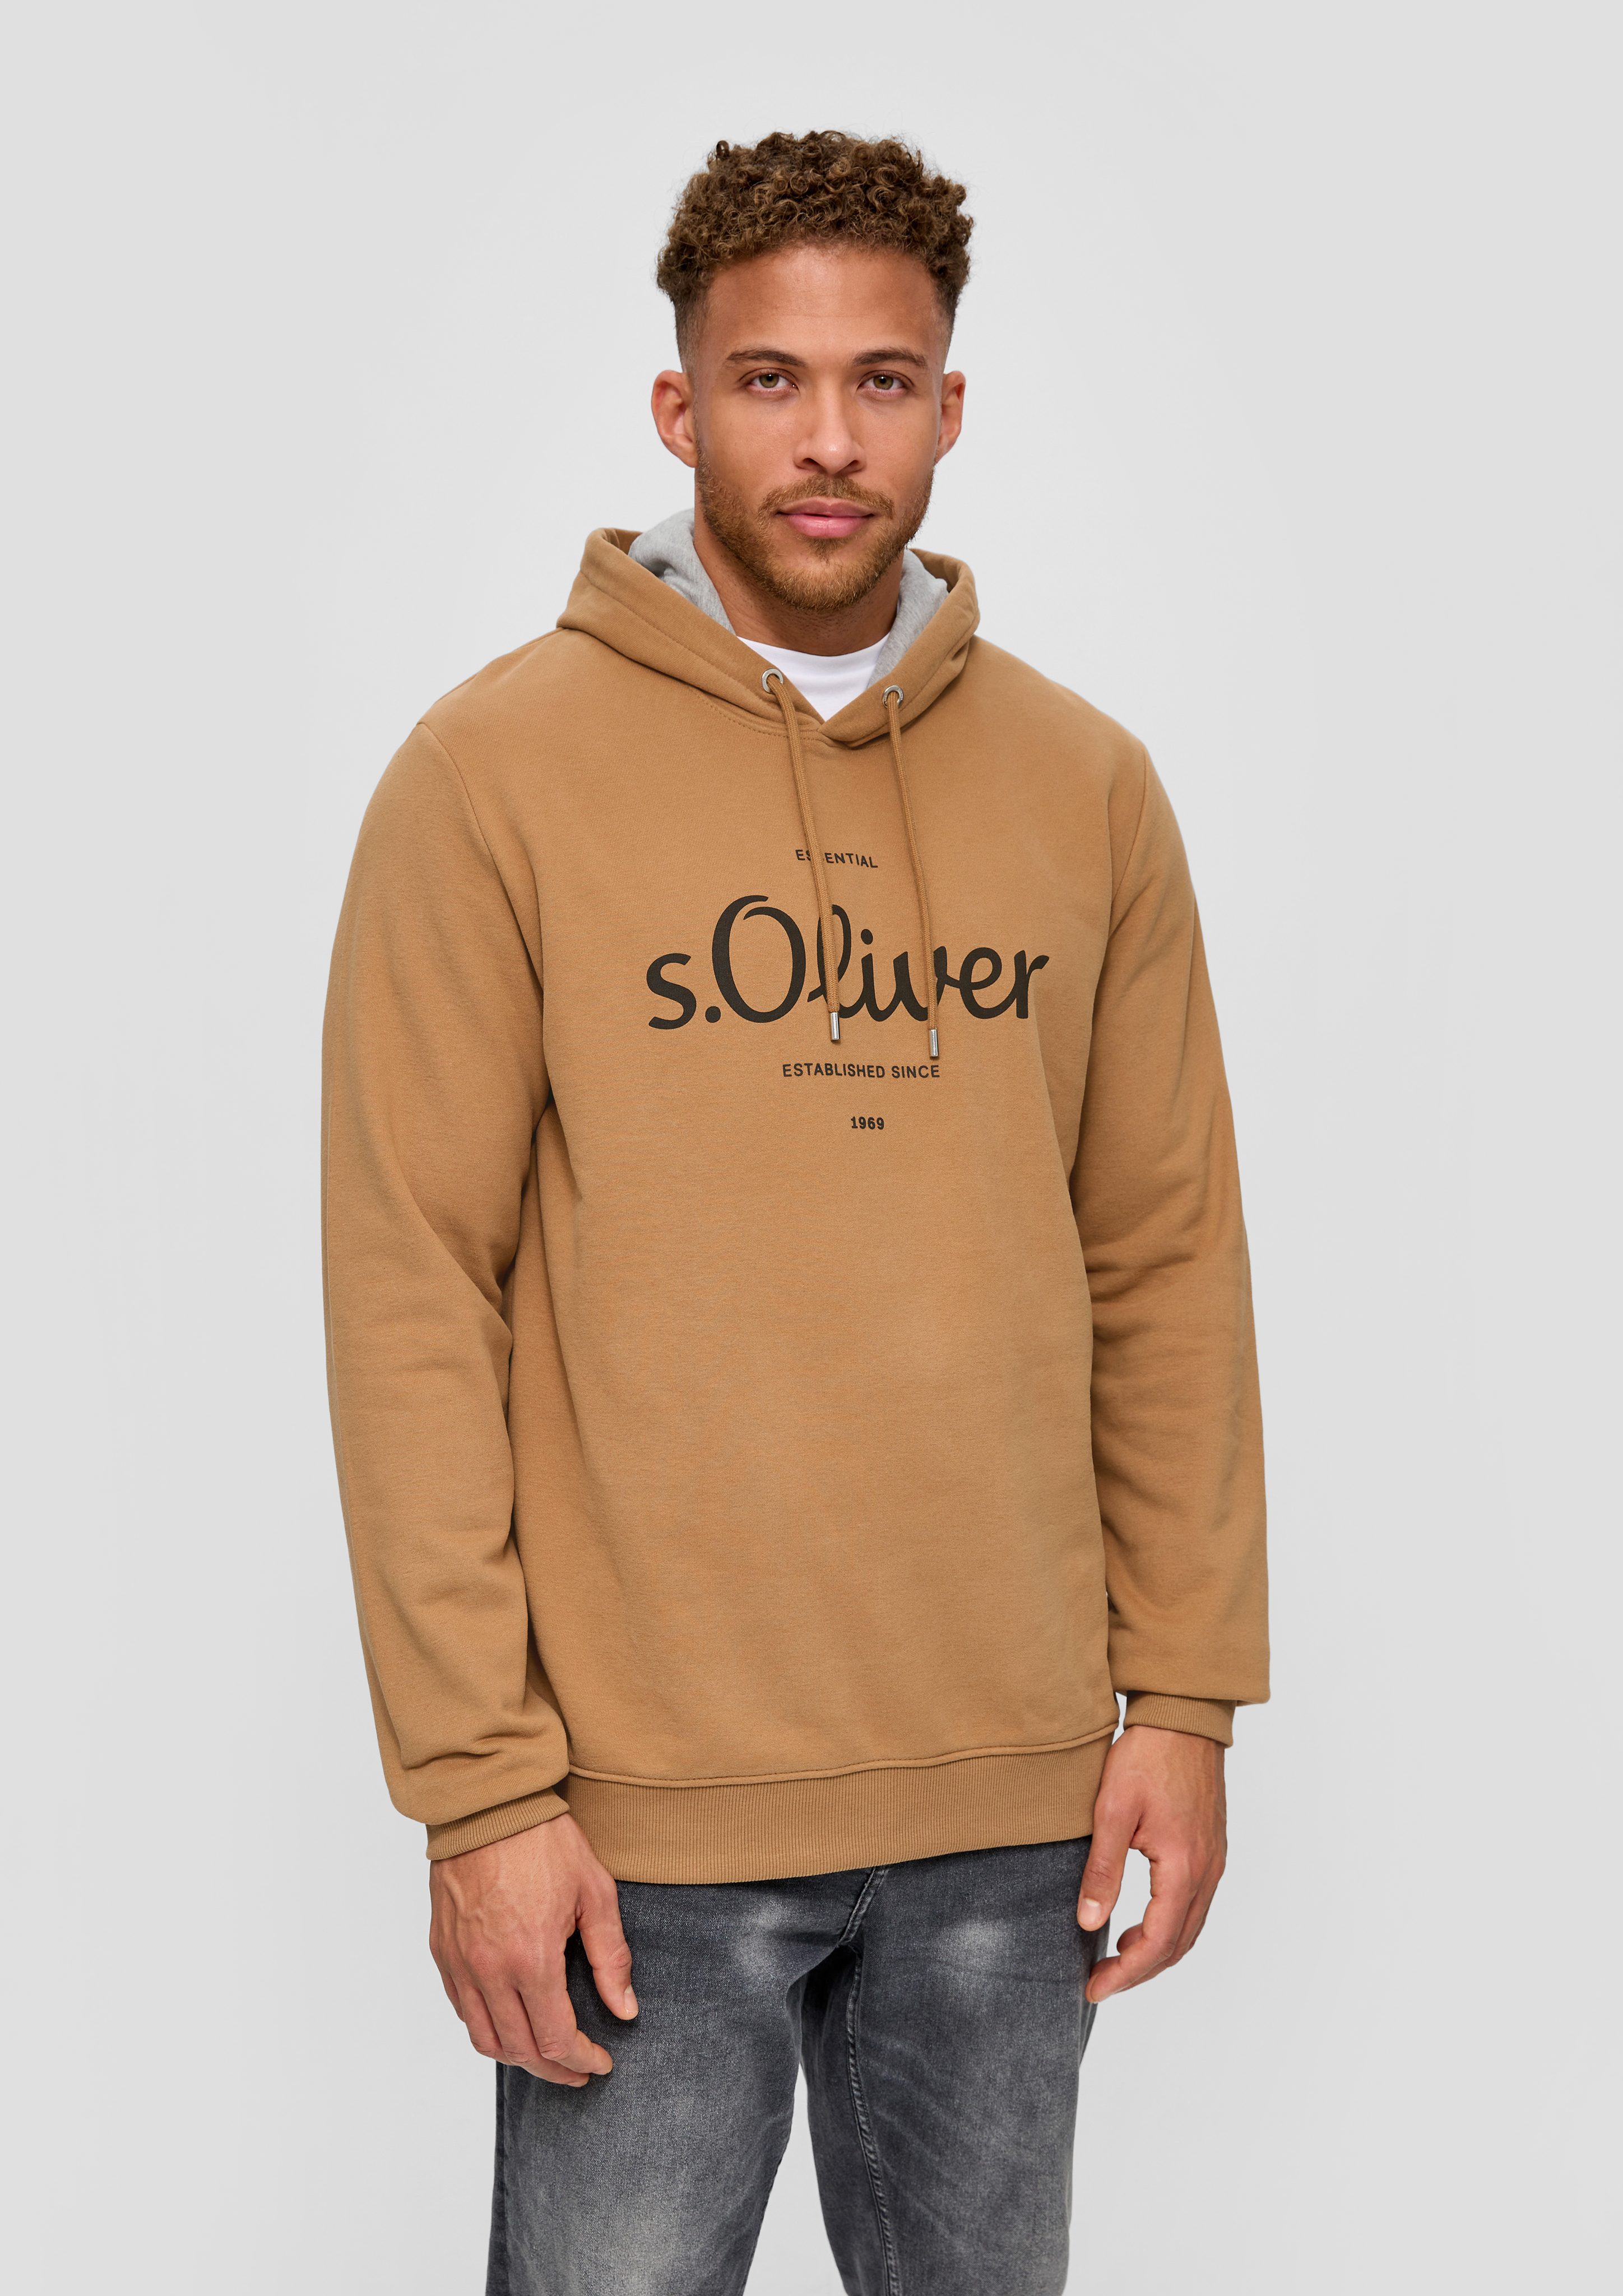 s.Oliver Sweatshirt Sweatshirt mit Kapuze sandstein | Sweatshirts